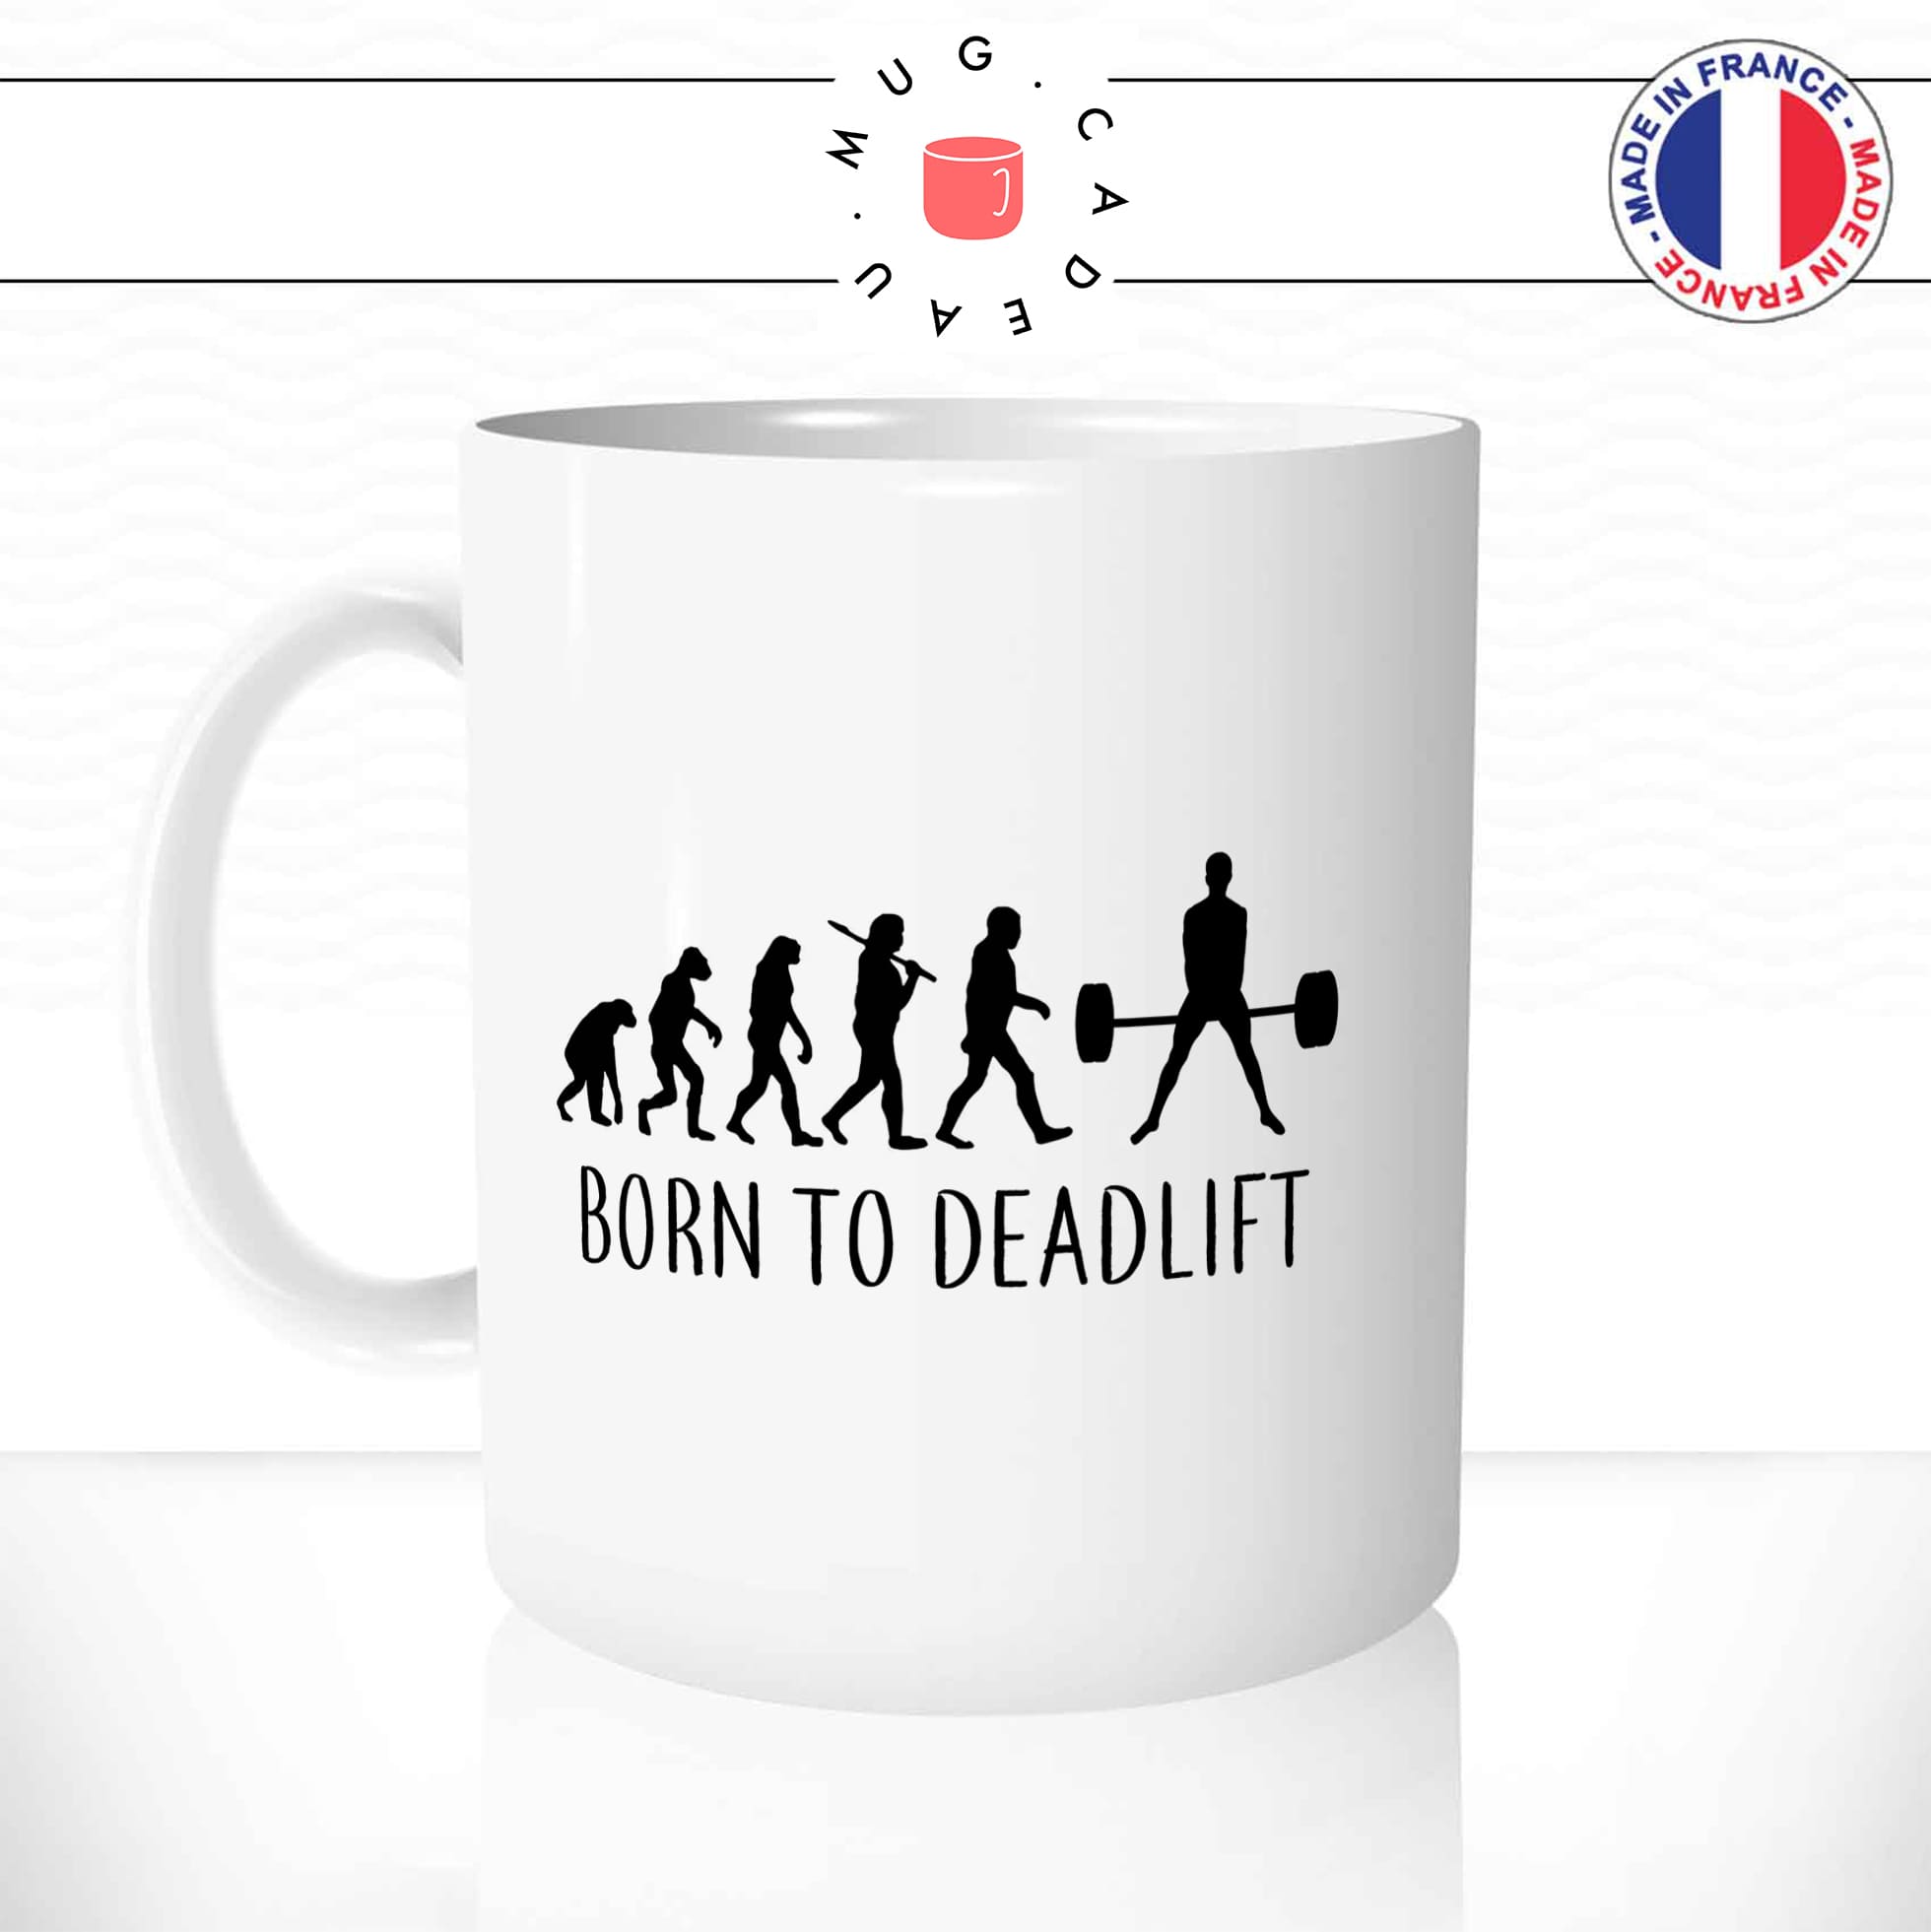 mug-tasse-born-to-deadlift-fitness-musculation-passion-sport-humour-evolution-de-l'homme-fun-café-thé-idée-cadeau-originale-personnalisée